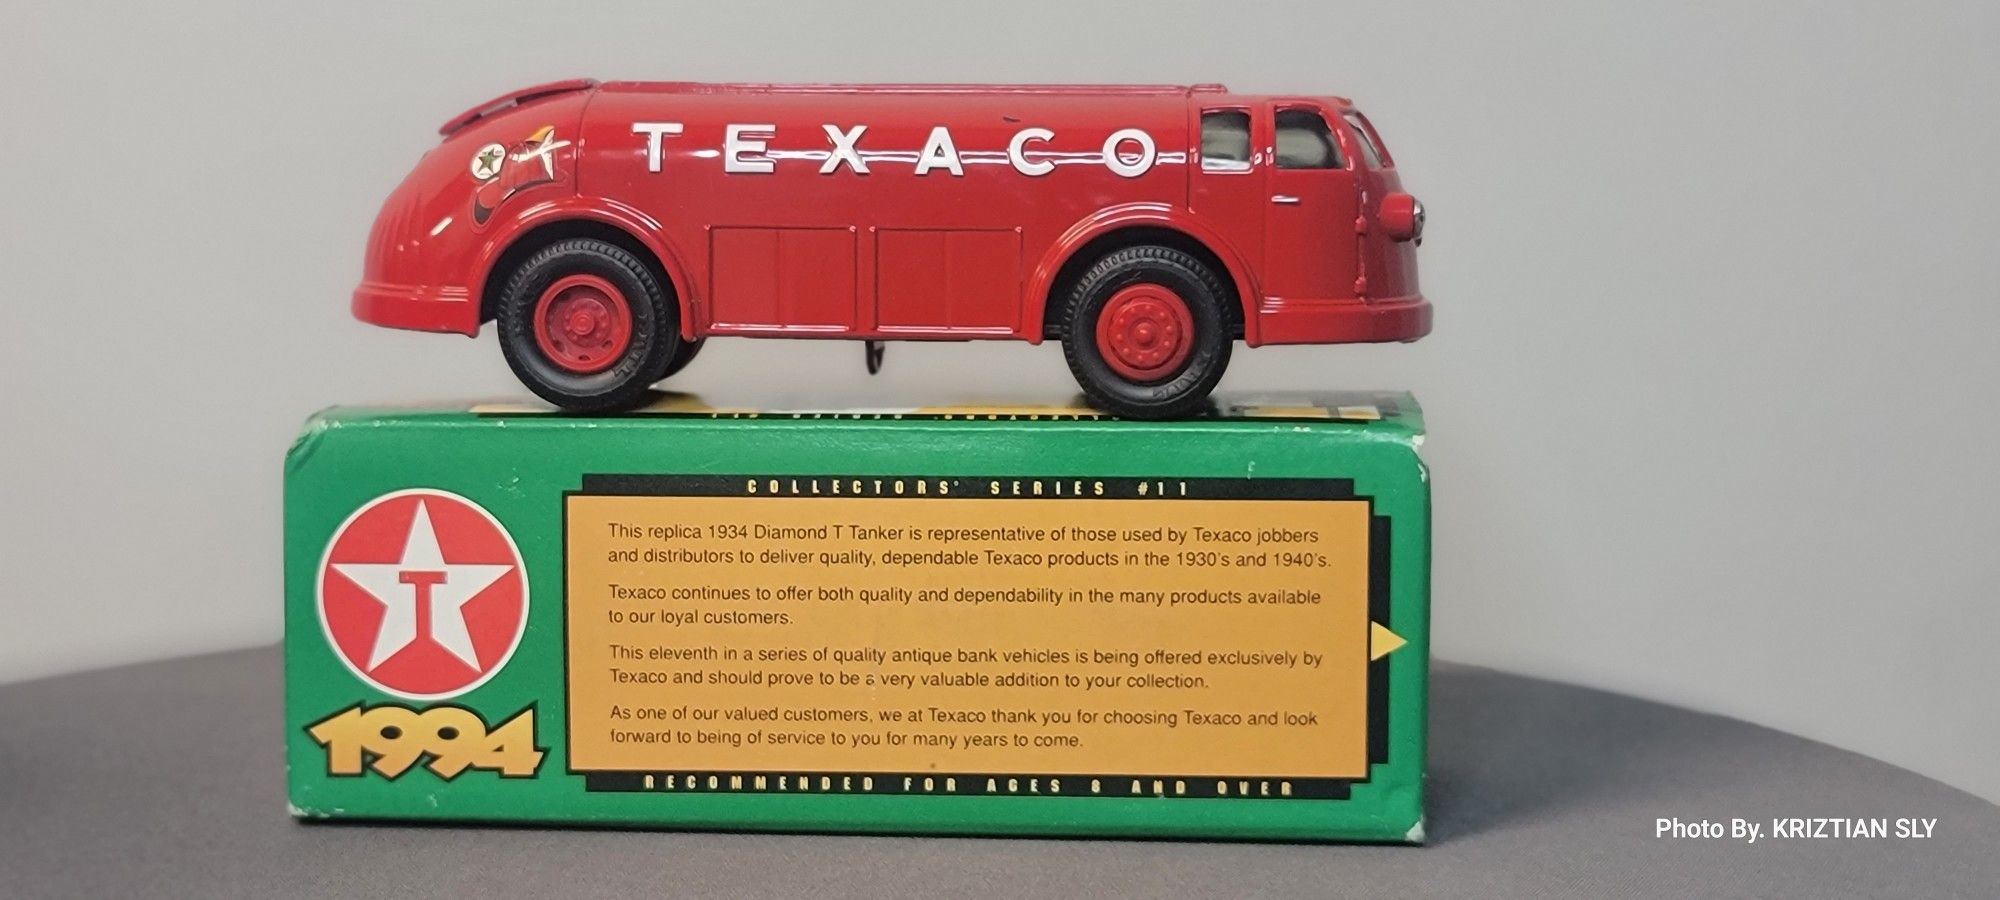 1934 Texaco Diamond T Tanker Doodle Bug Bank